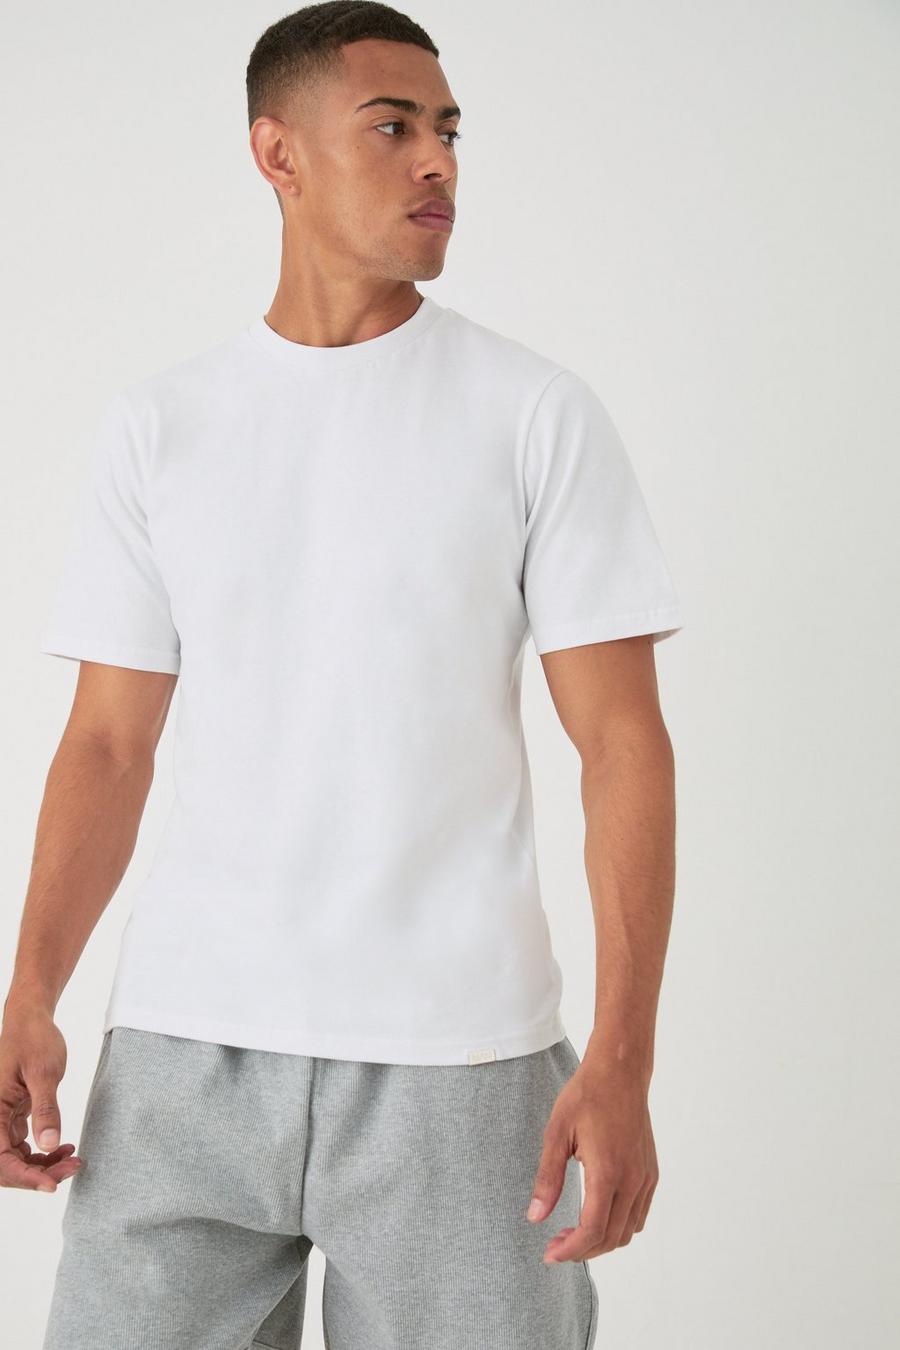 T-Shirt, White